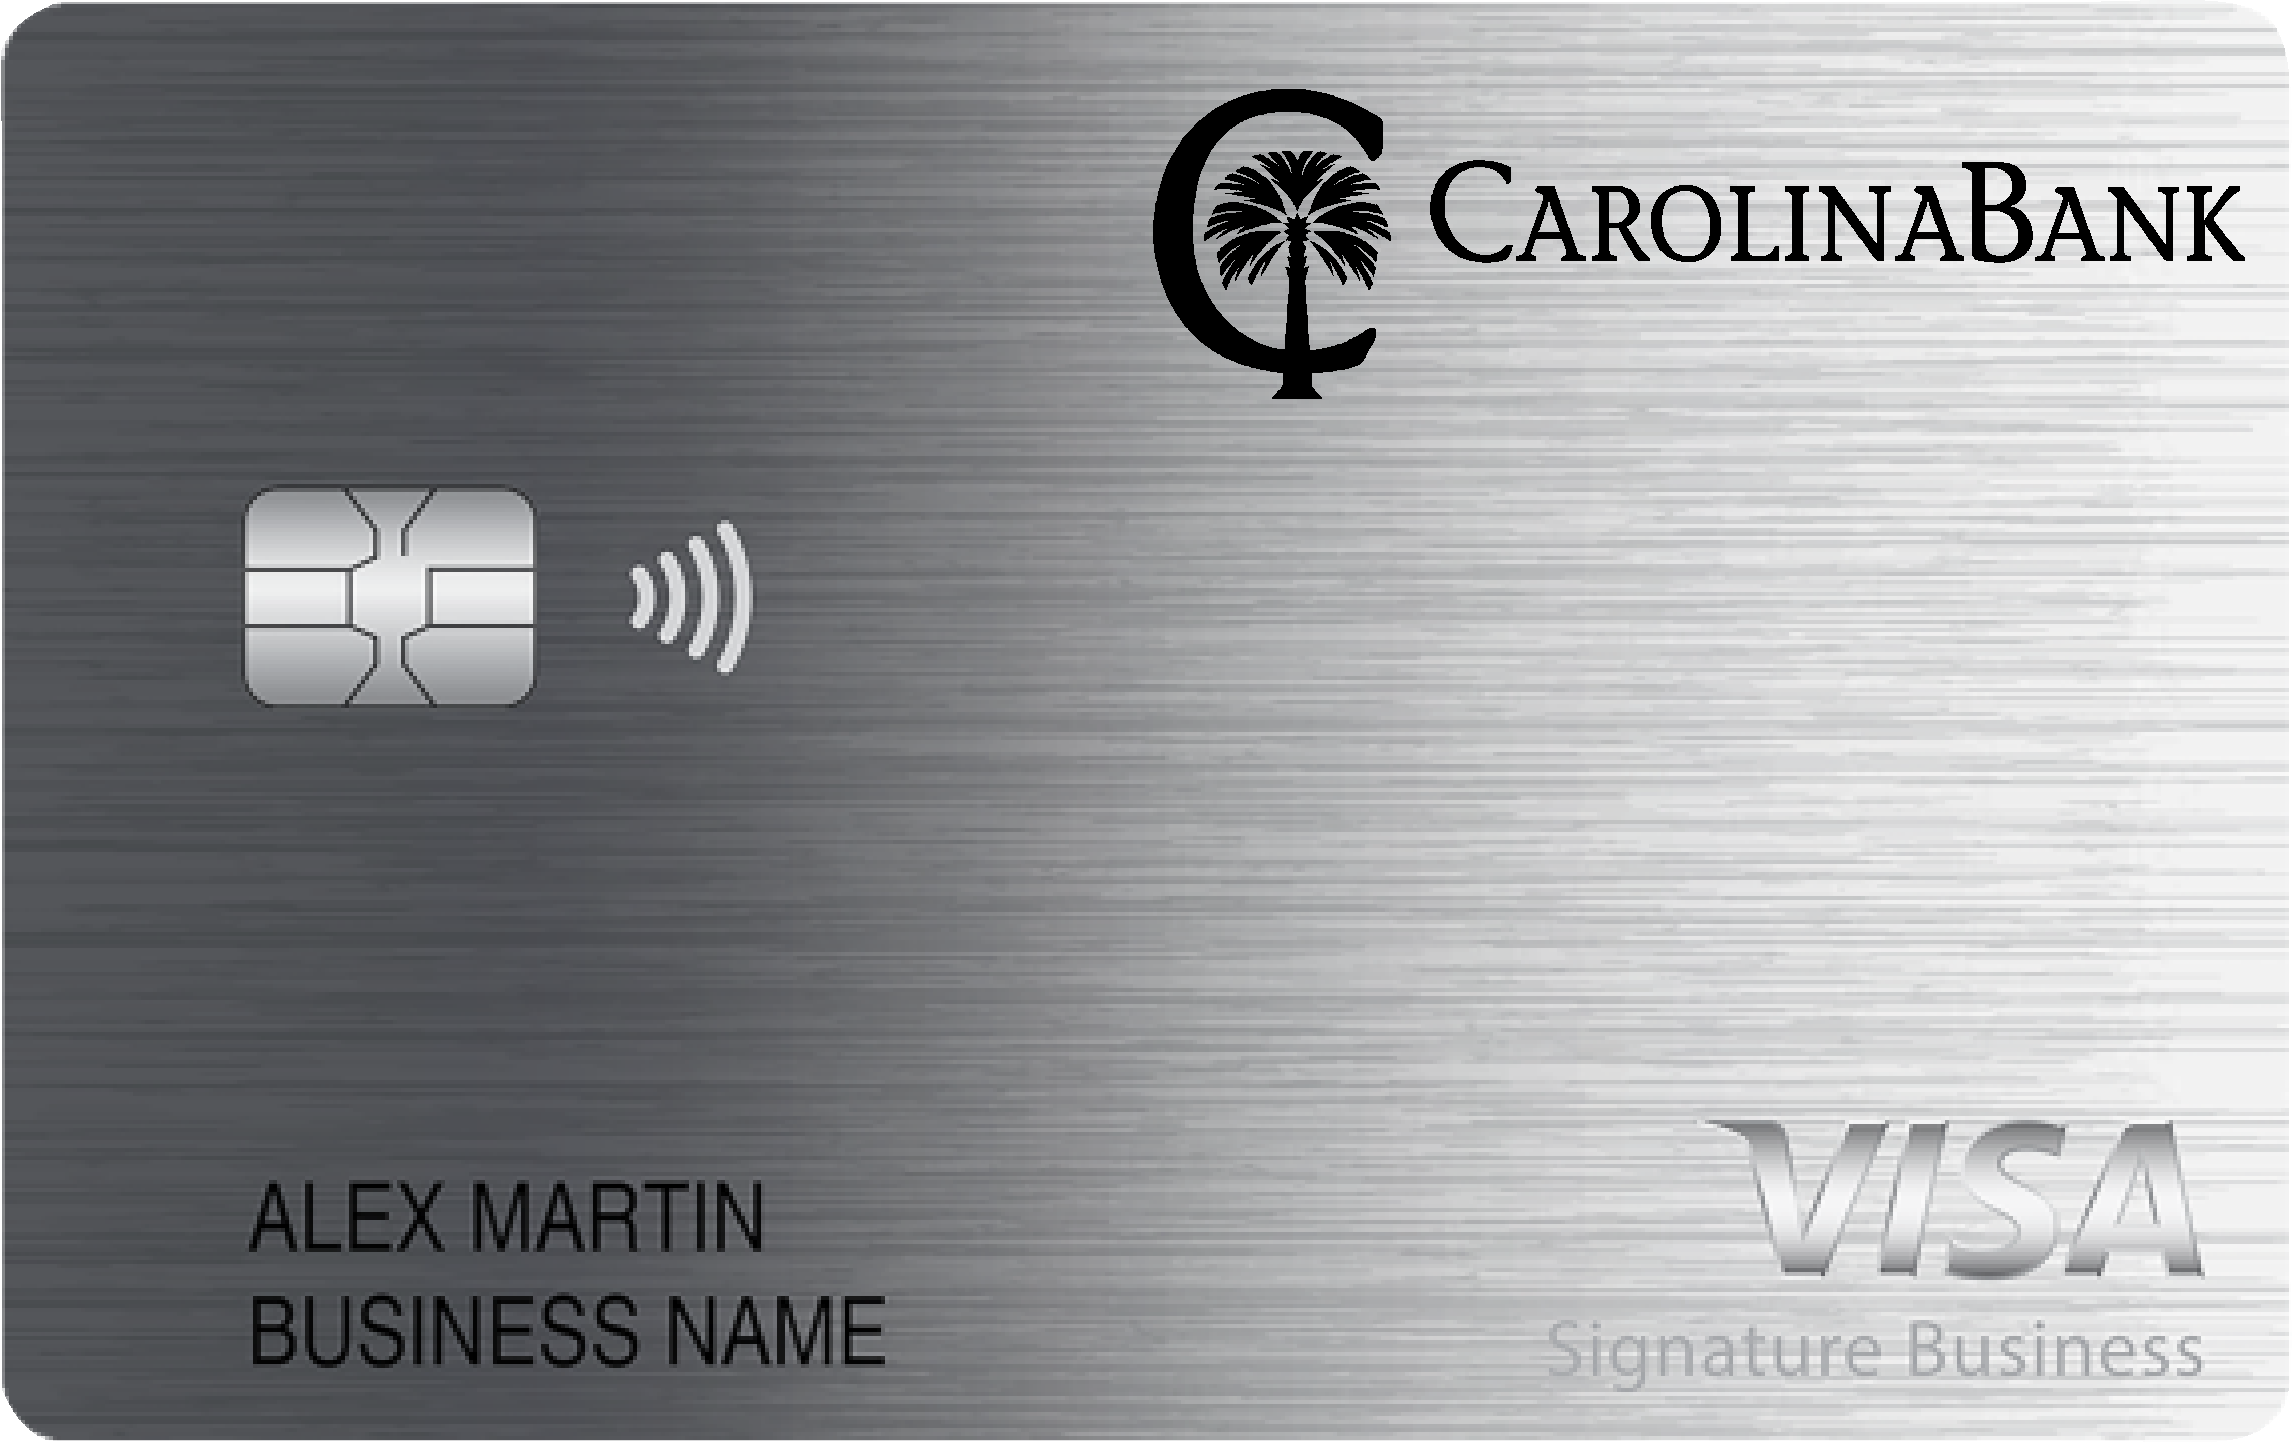 Carolina Bank Smart Business Rewards Card